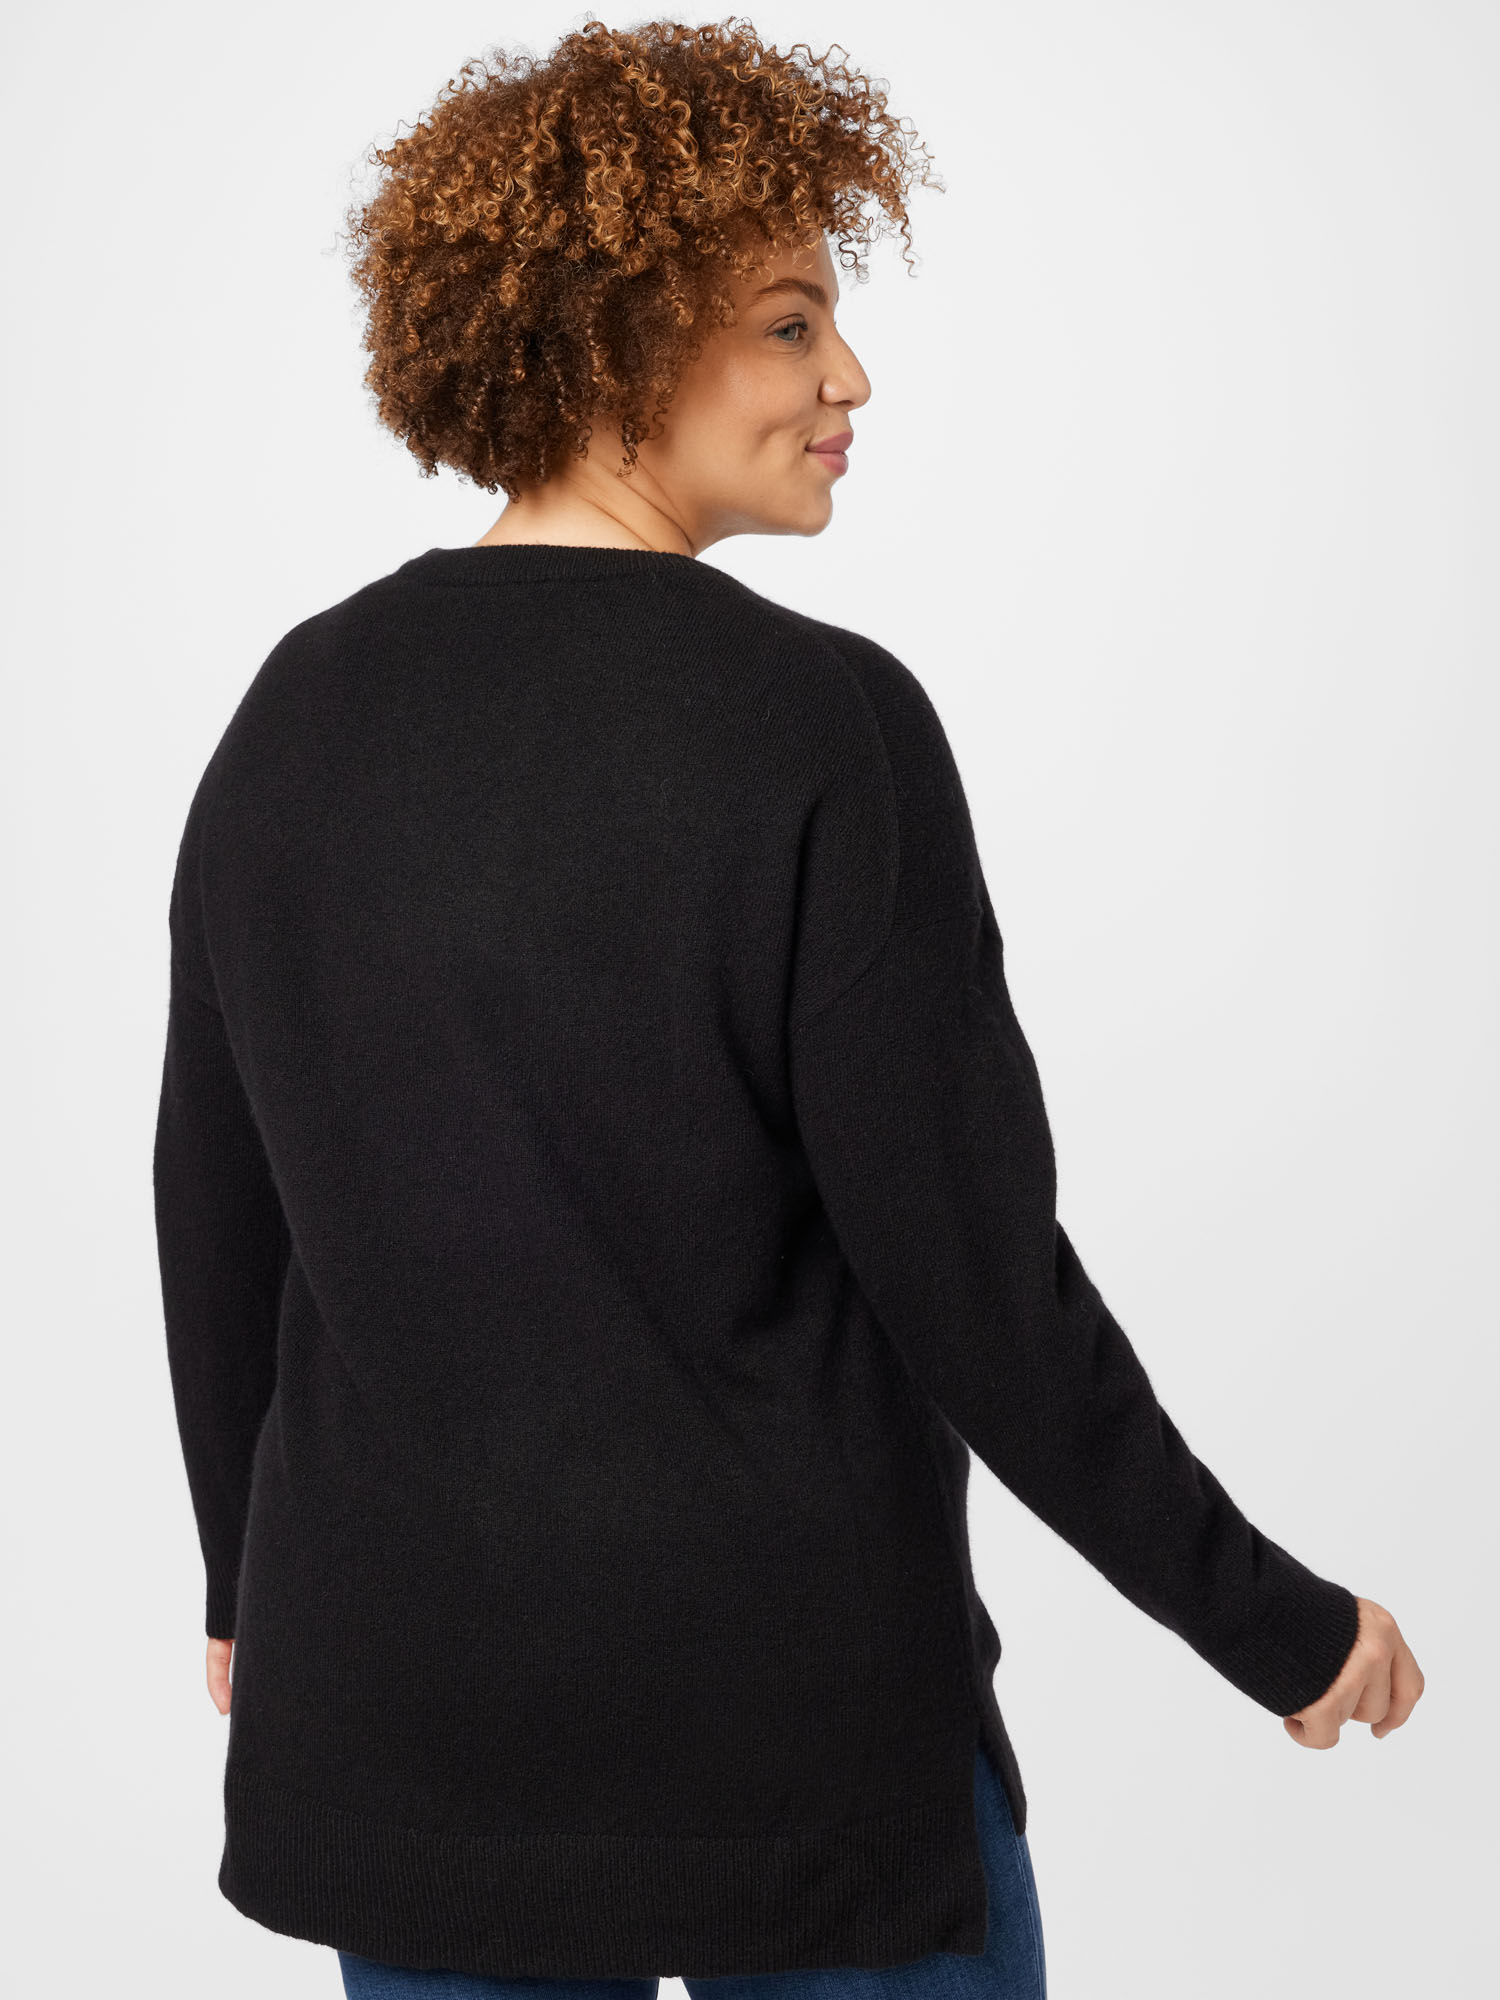 Odzież Kobiety Esprit Curves Sweter w kolorze Czarnym 